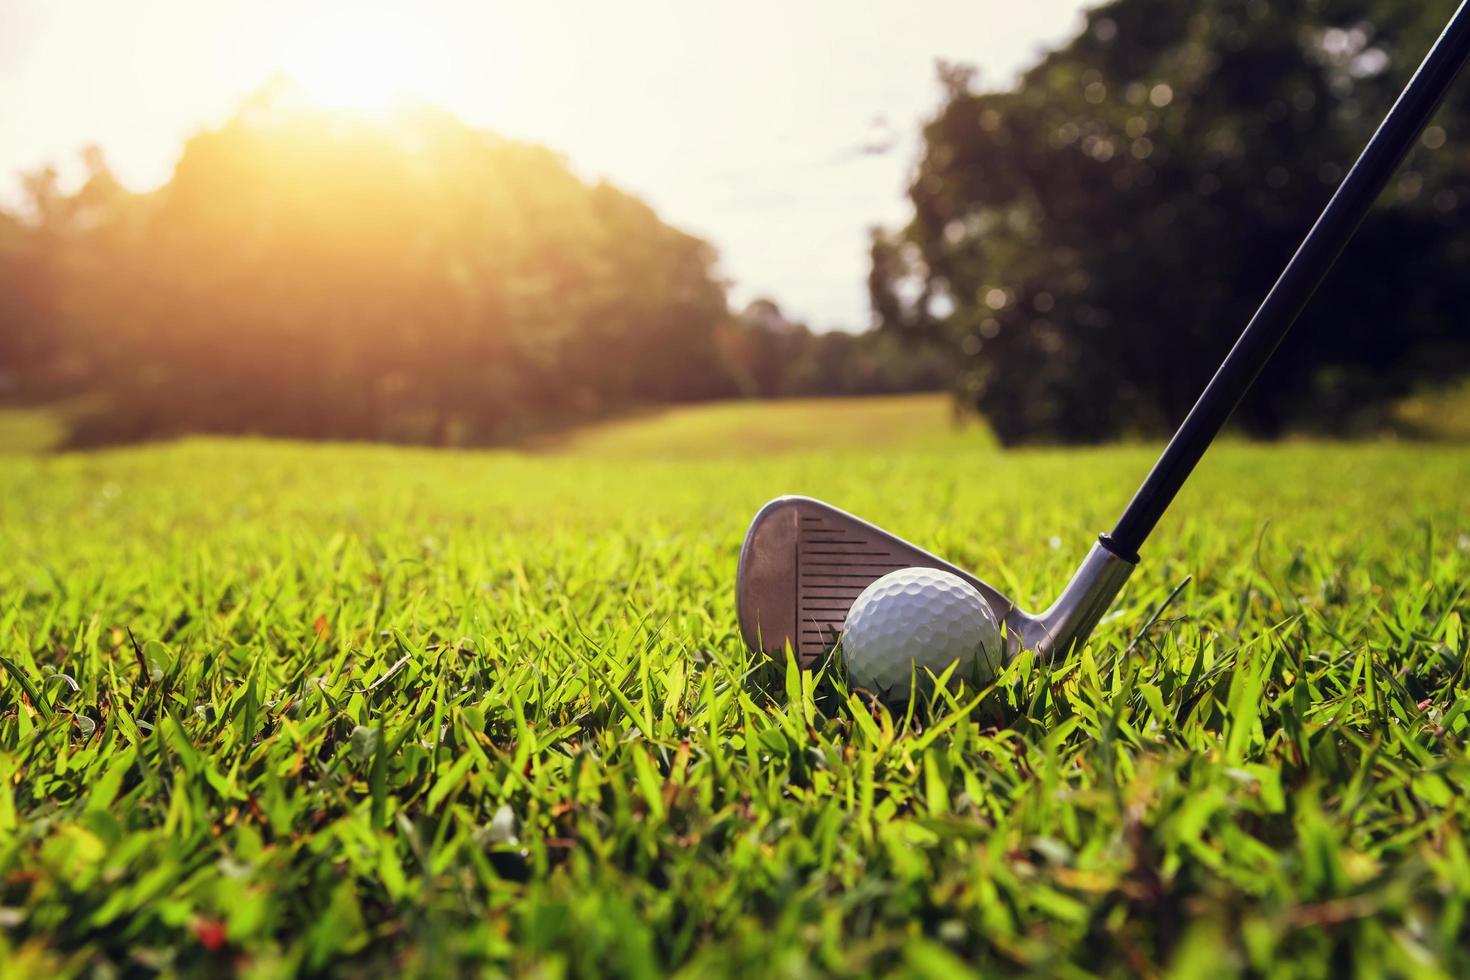 clube de golfe closeup e bola de golfe na grama verde com pôr do sol foto